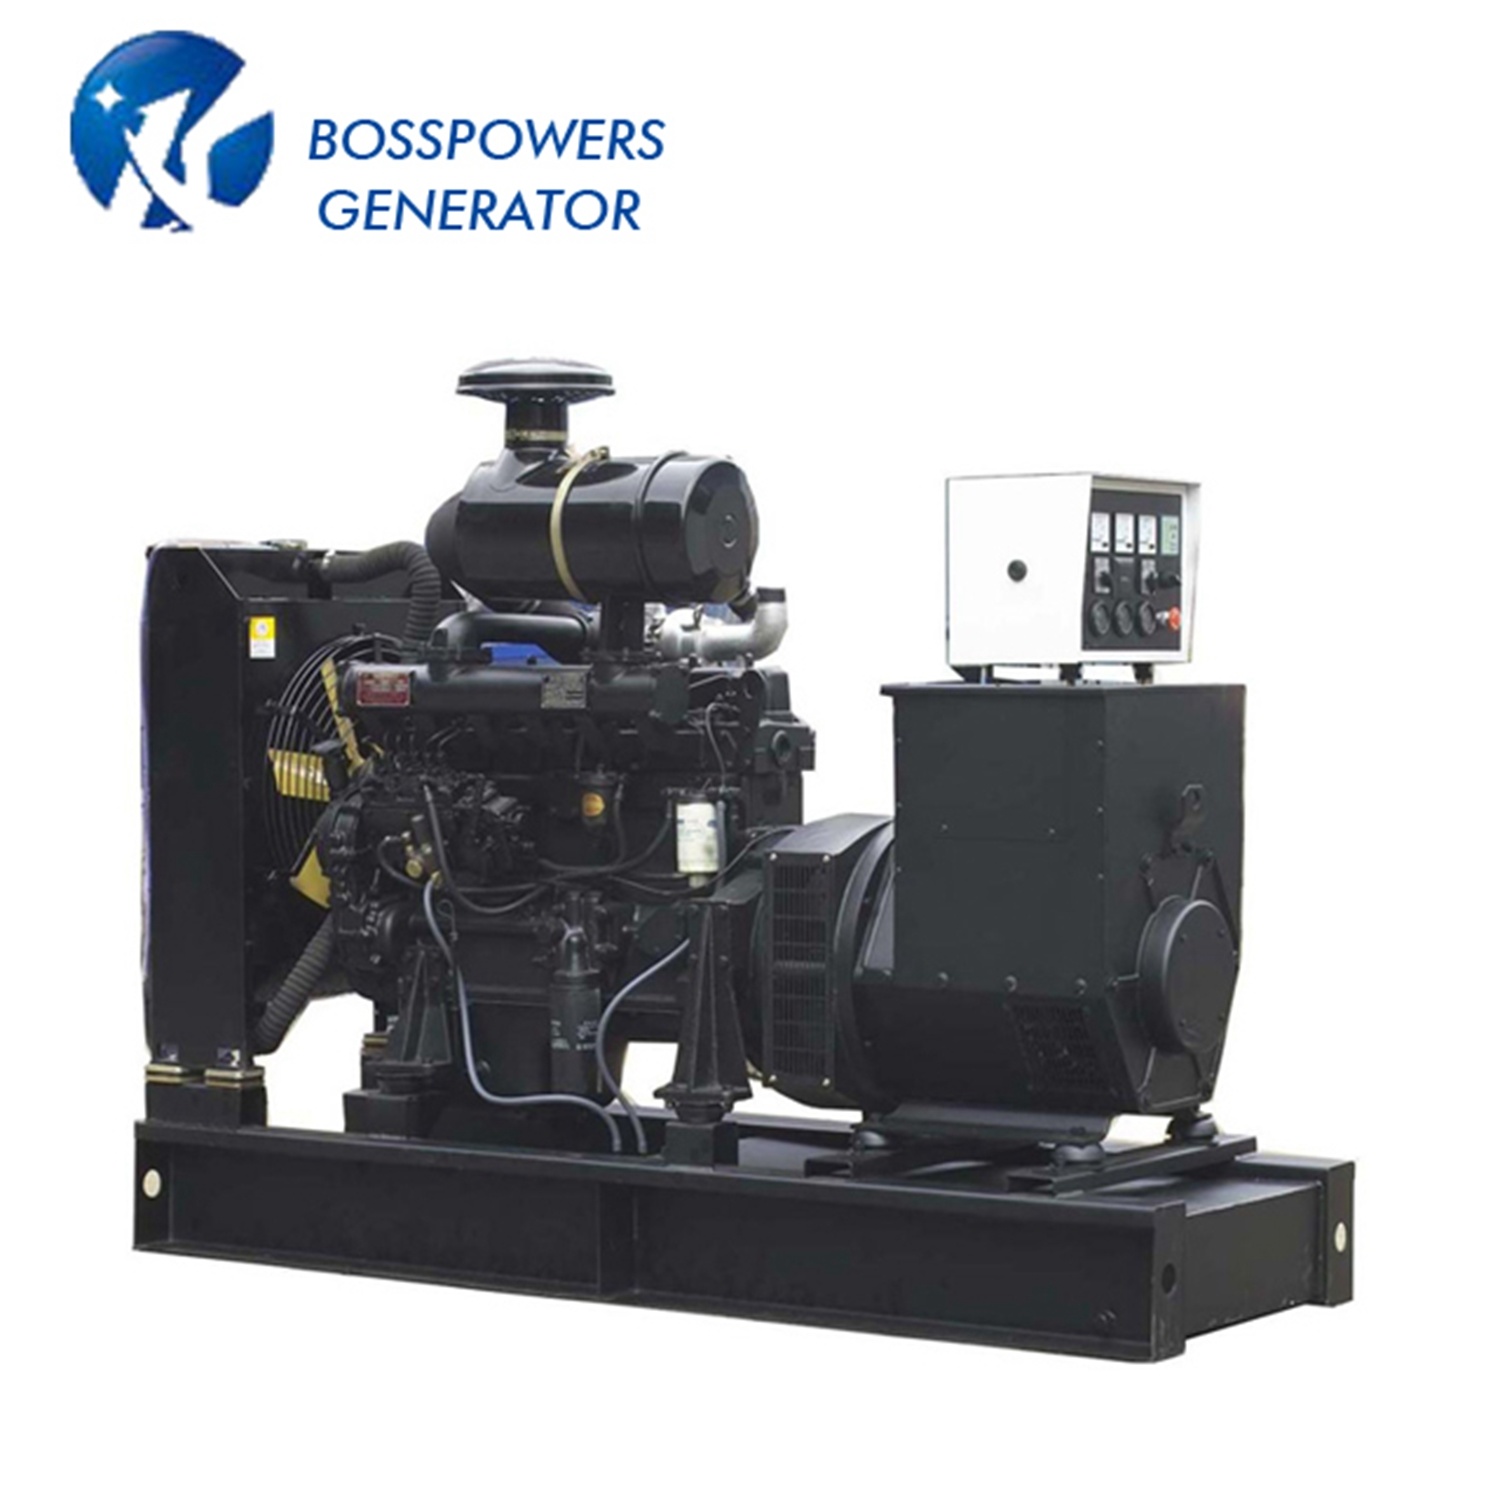 1500kVA Prime Power Diesel Generator Open Type Powered by Kta50-G9